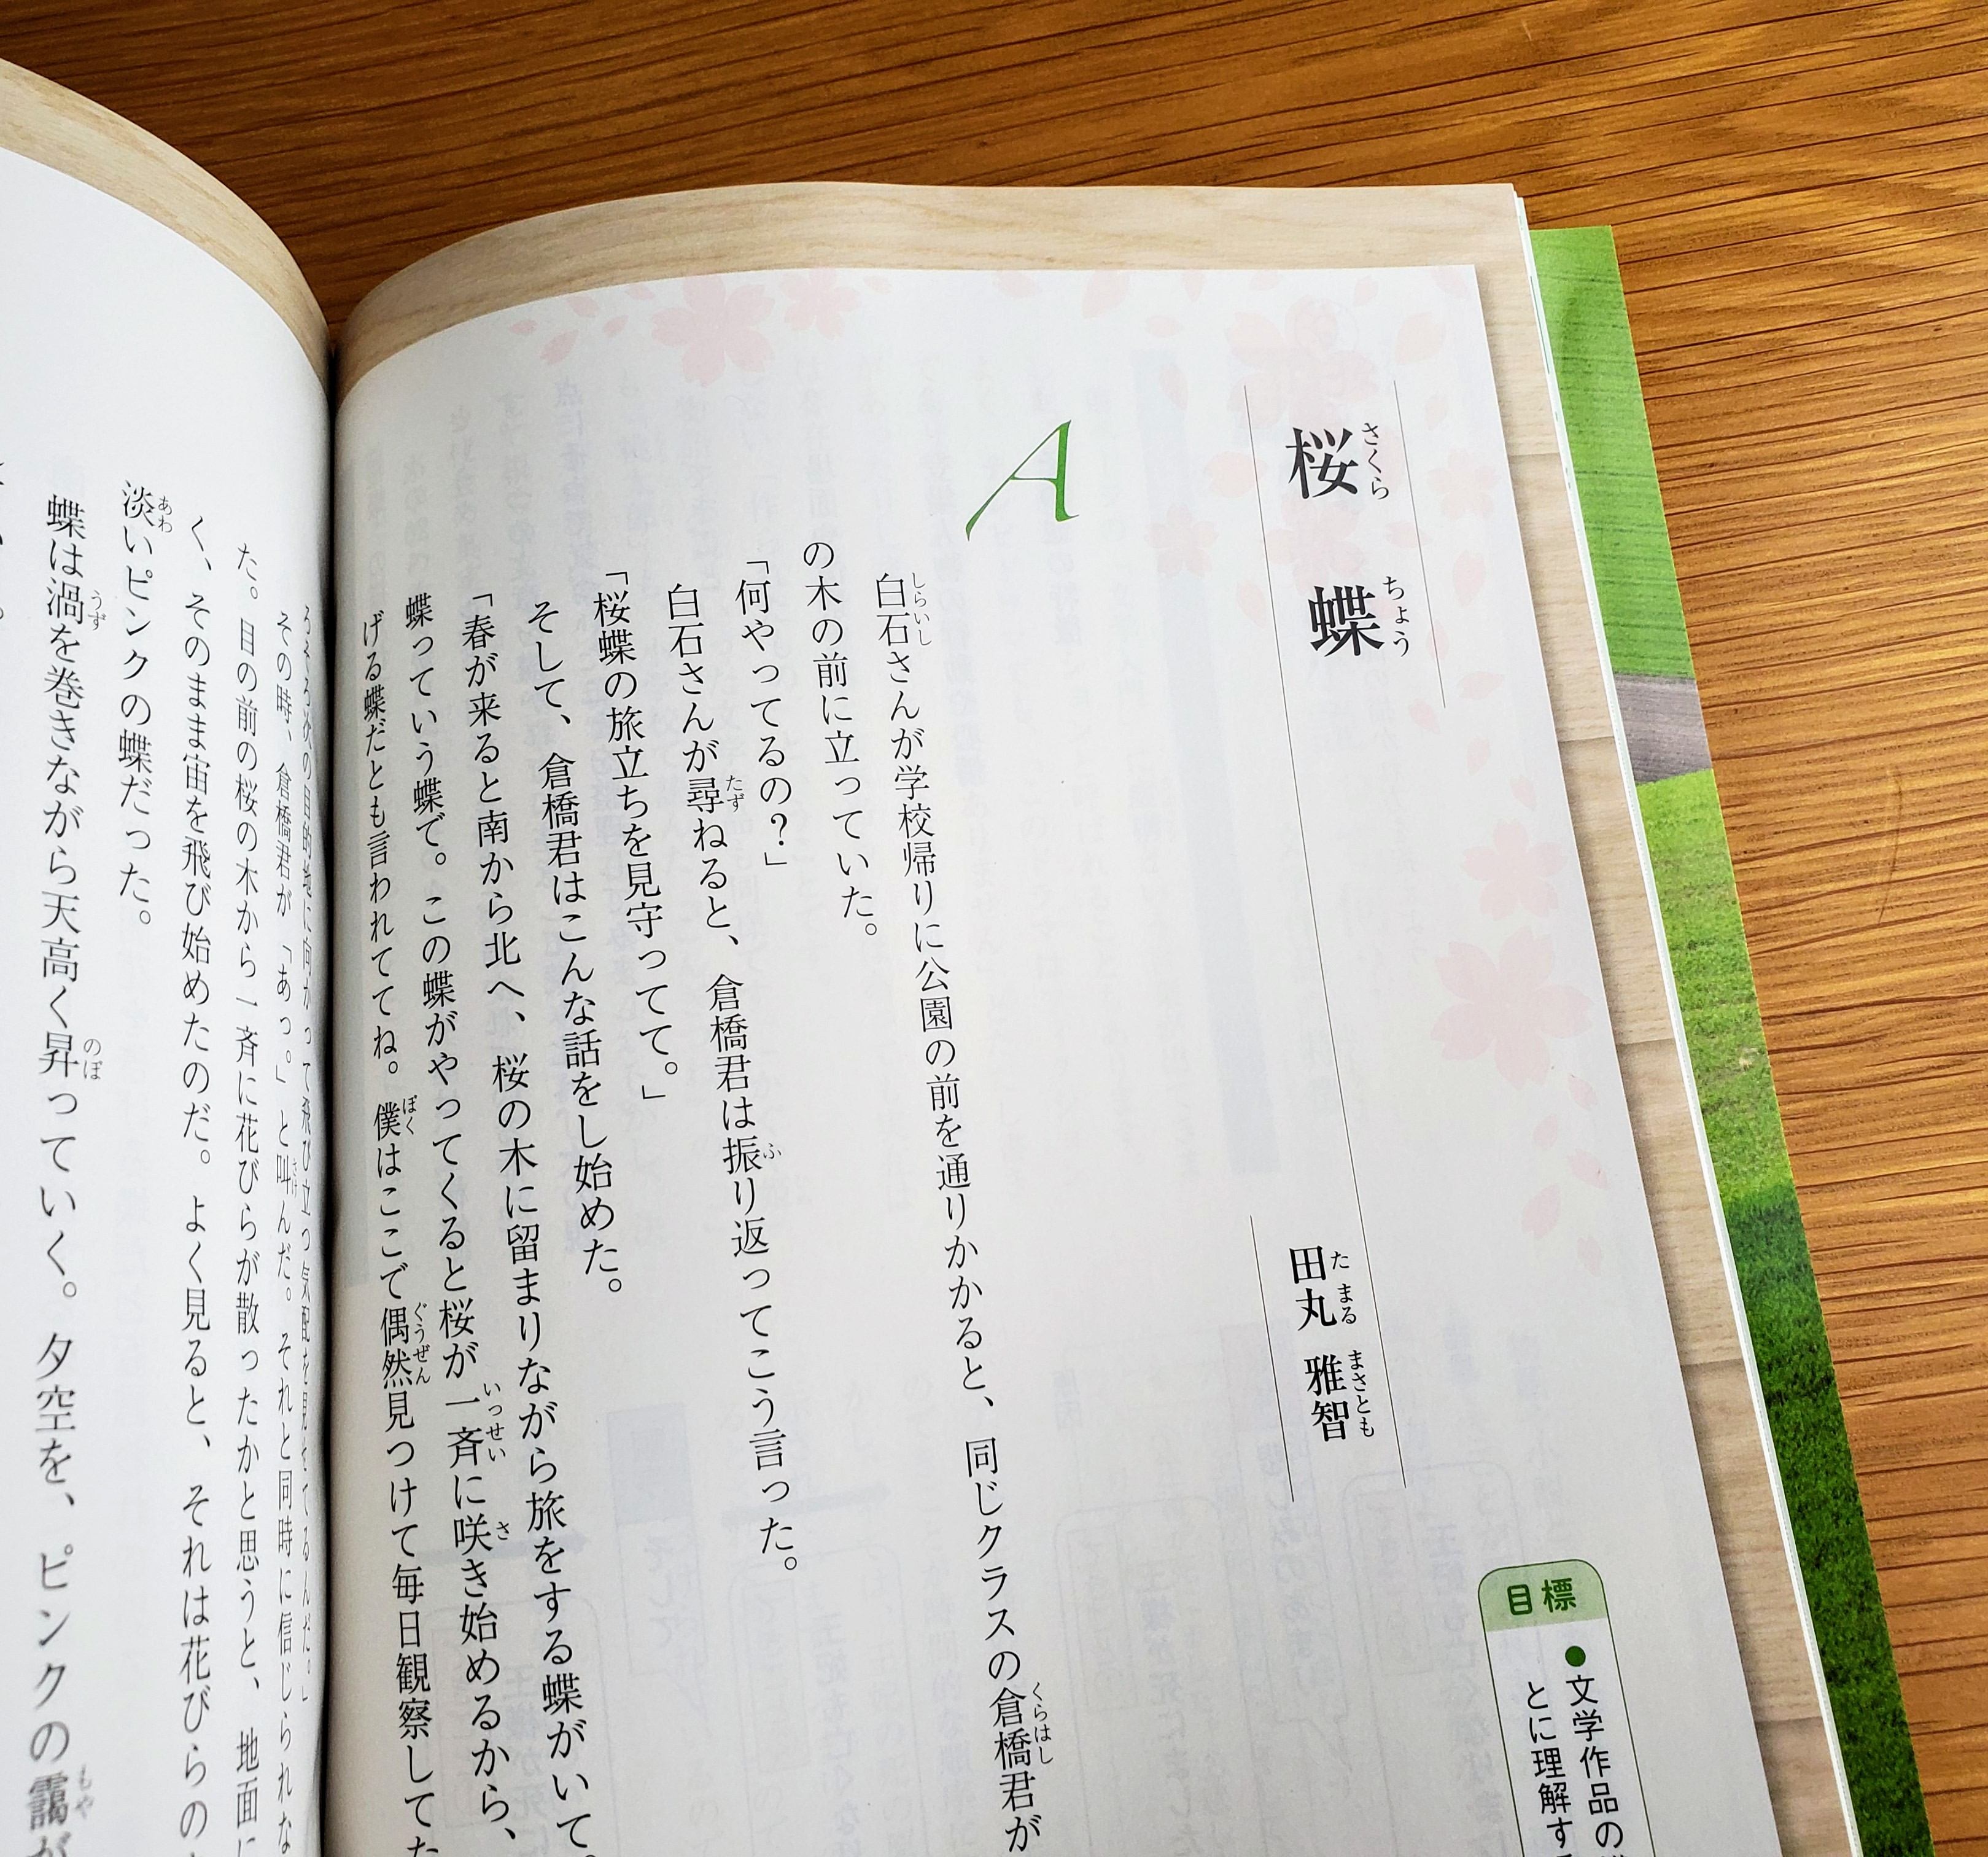 田丸雅智 この４月から使われている中学１年生の国語教科書 教育出版 の 最初に出てくる小説作品として 書き下ろし２作が掲載されています いずれも同じ設定の 桜蝶 というお話で 描き方による違いを味わおうという趣旨です 楽しんでいただけますよう